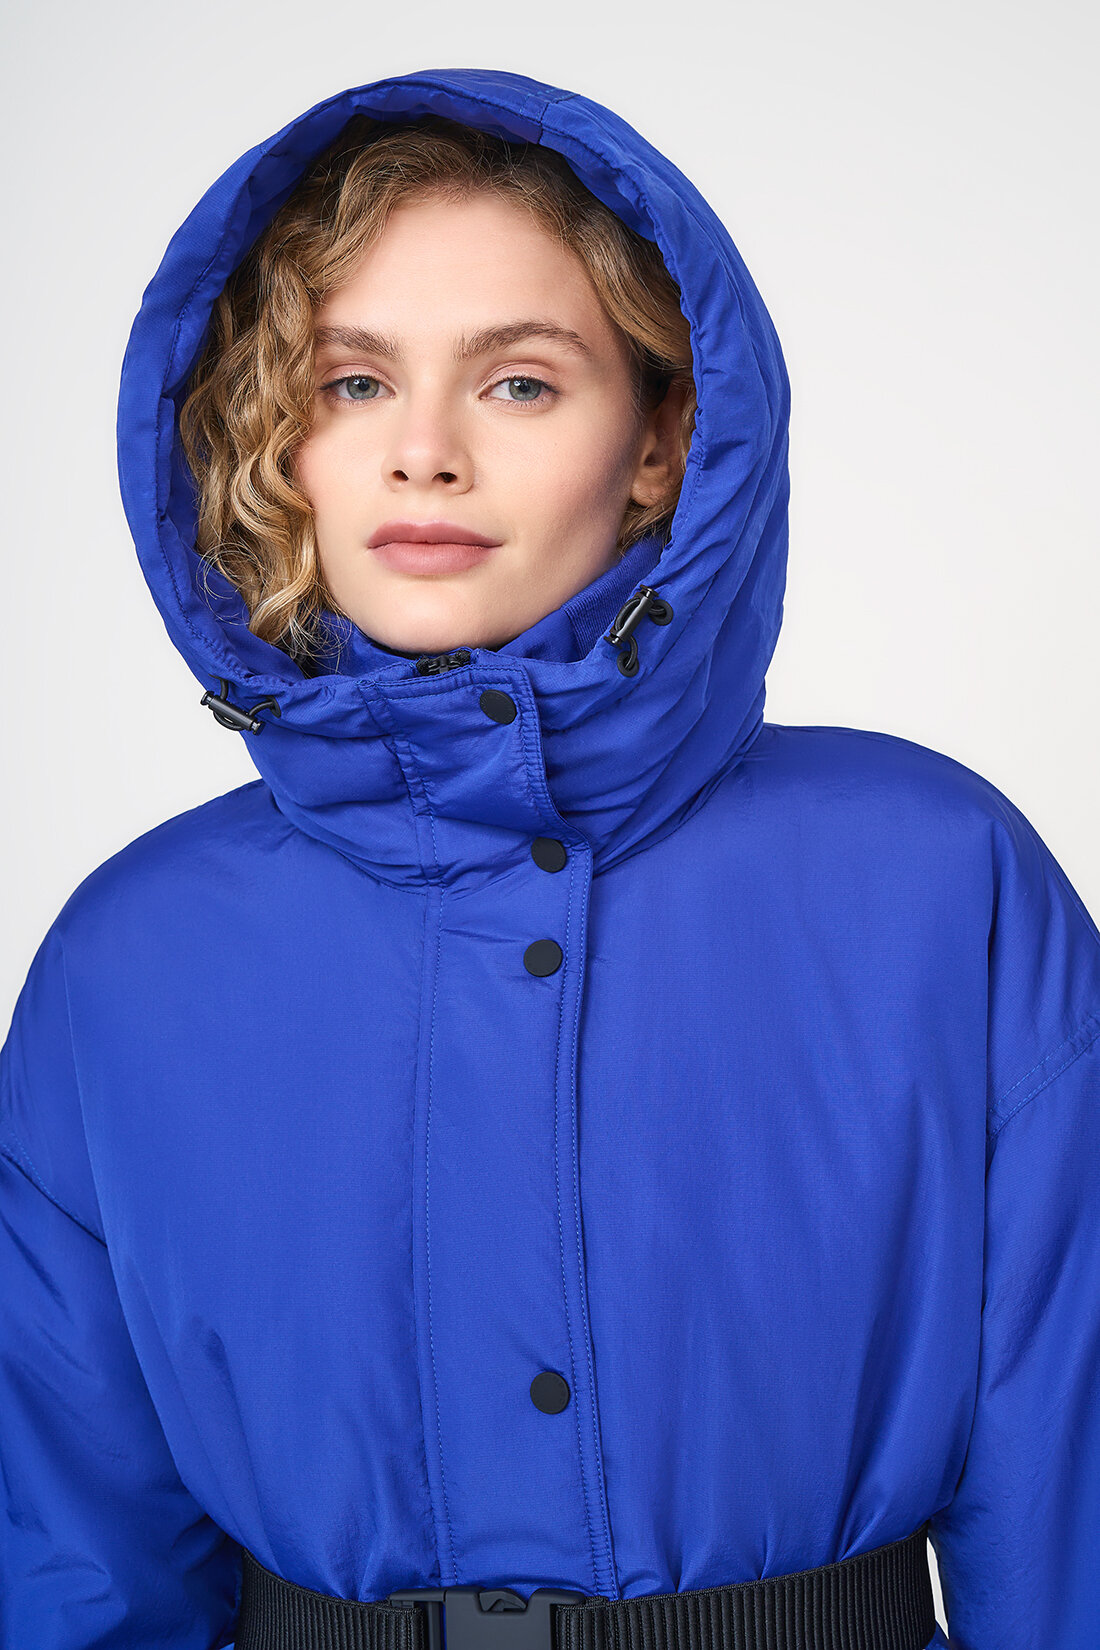 куртка Baon, демисезон/зима, удлиненная, силуэт прямой, капюшон, карманы, пояс/ремень, ветрозащитная, утепленная, манжеты, размер L, синий - фотография № 3